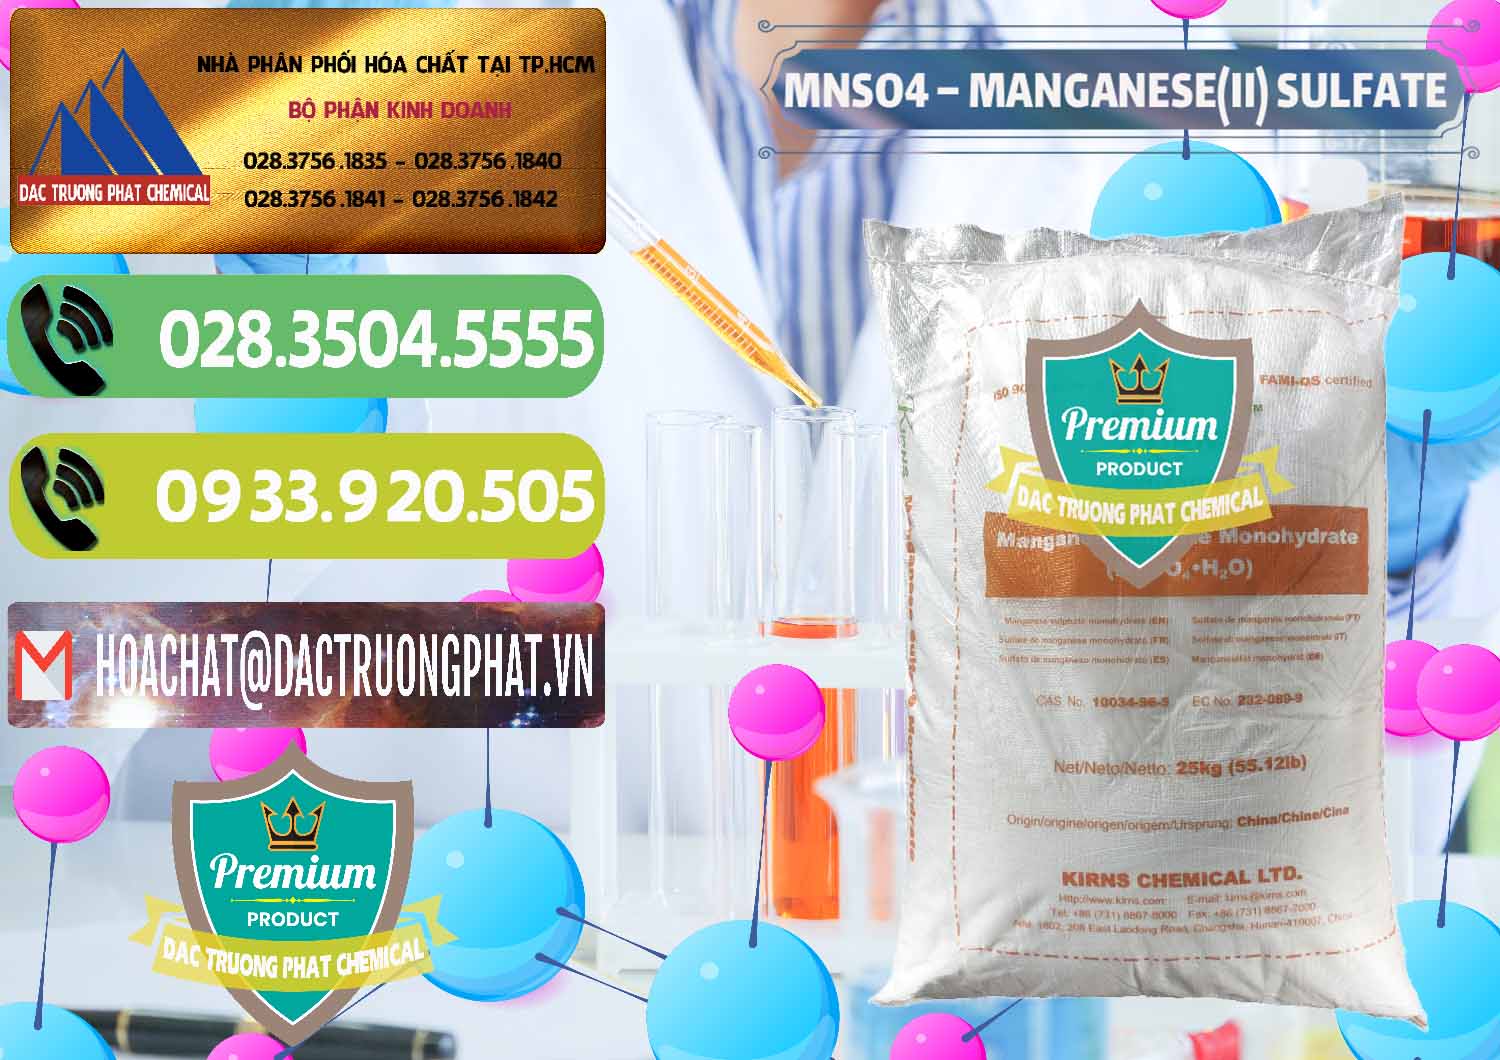 Nơi cung cấp và bán MNSO4 – Manganese (II) Sulfate Kirns Trung Quốc China - 0095 - Đơn vị cung cấp và nhập khẩu hóa chất tại TP.HCM - hoachatmientay.vn